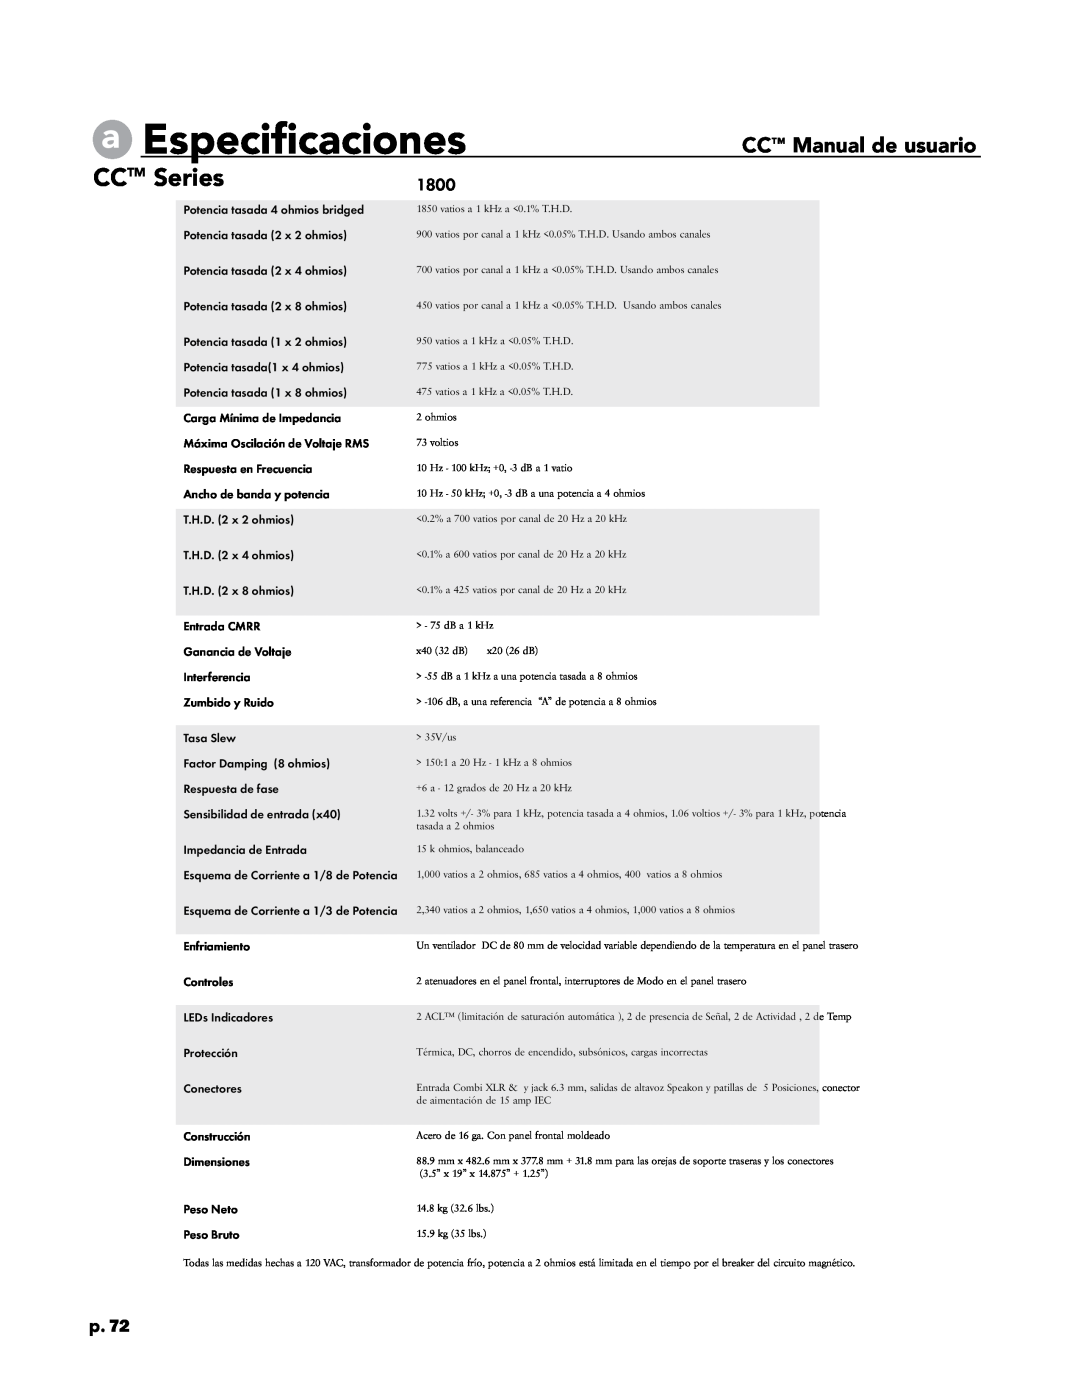 Crest Audio CC 5500, CC 2800, CC 4000, CC 1800 owner manual aEspecificaciones, CCTM Series, CC Manual de usuario, p.72 